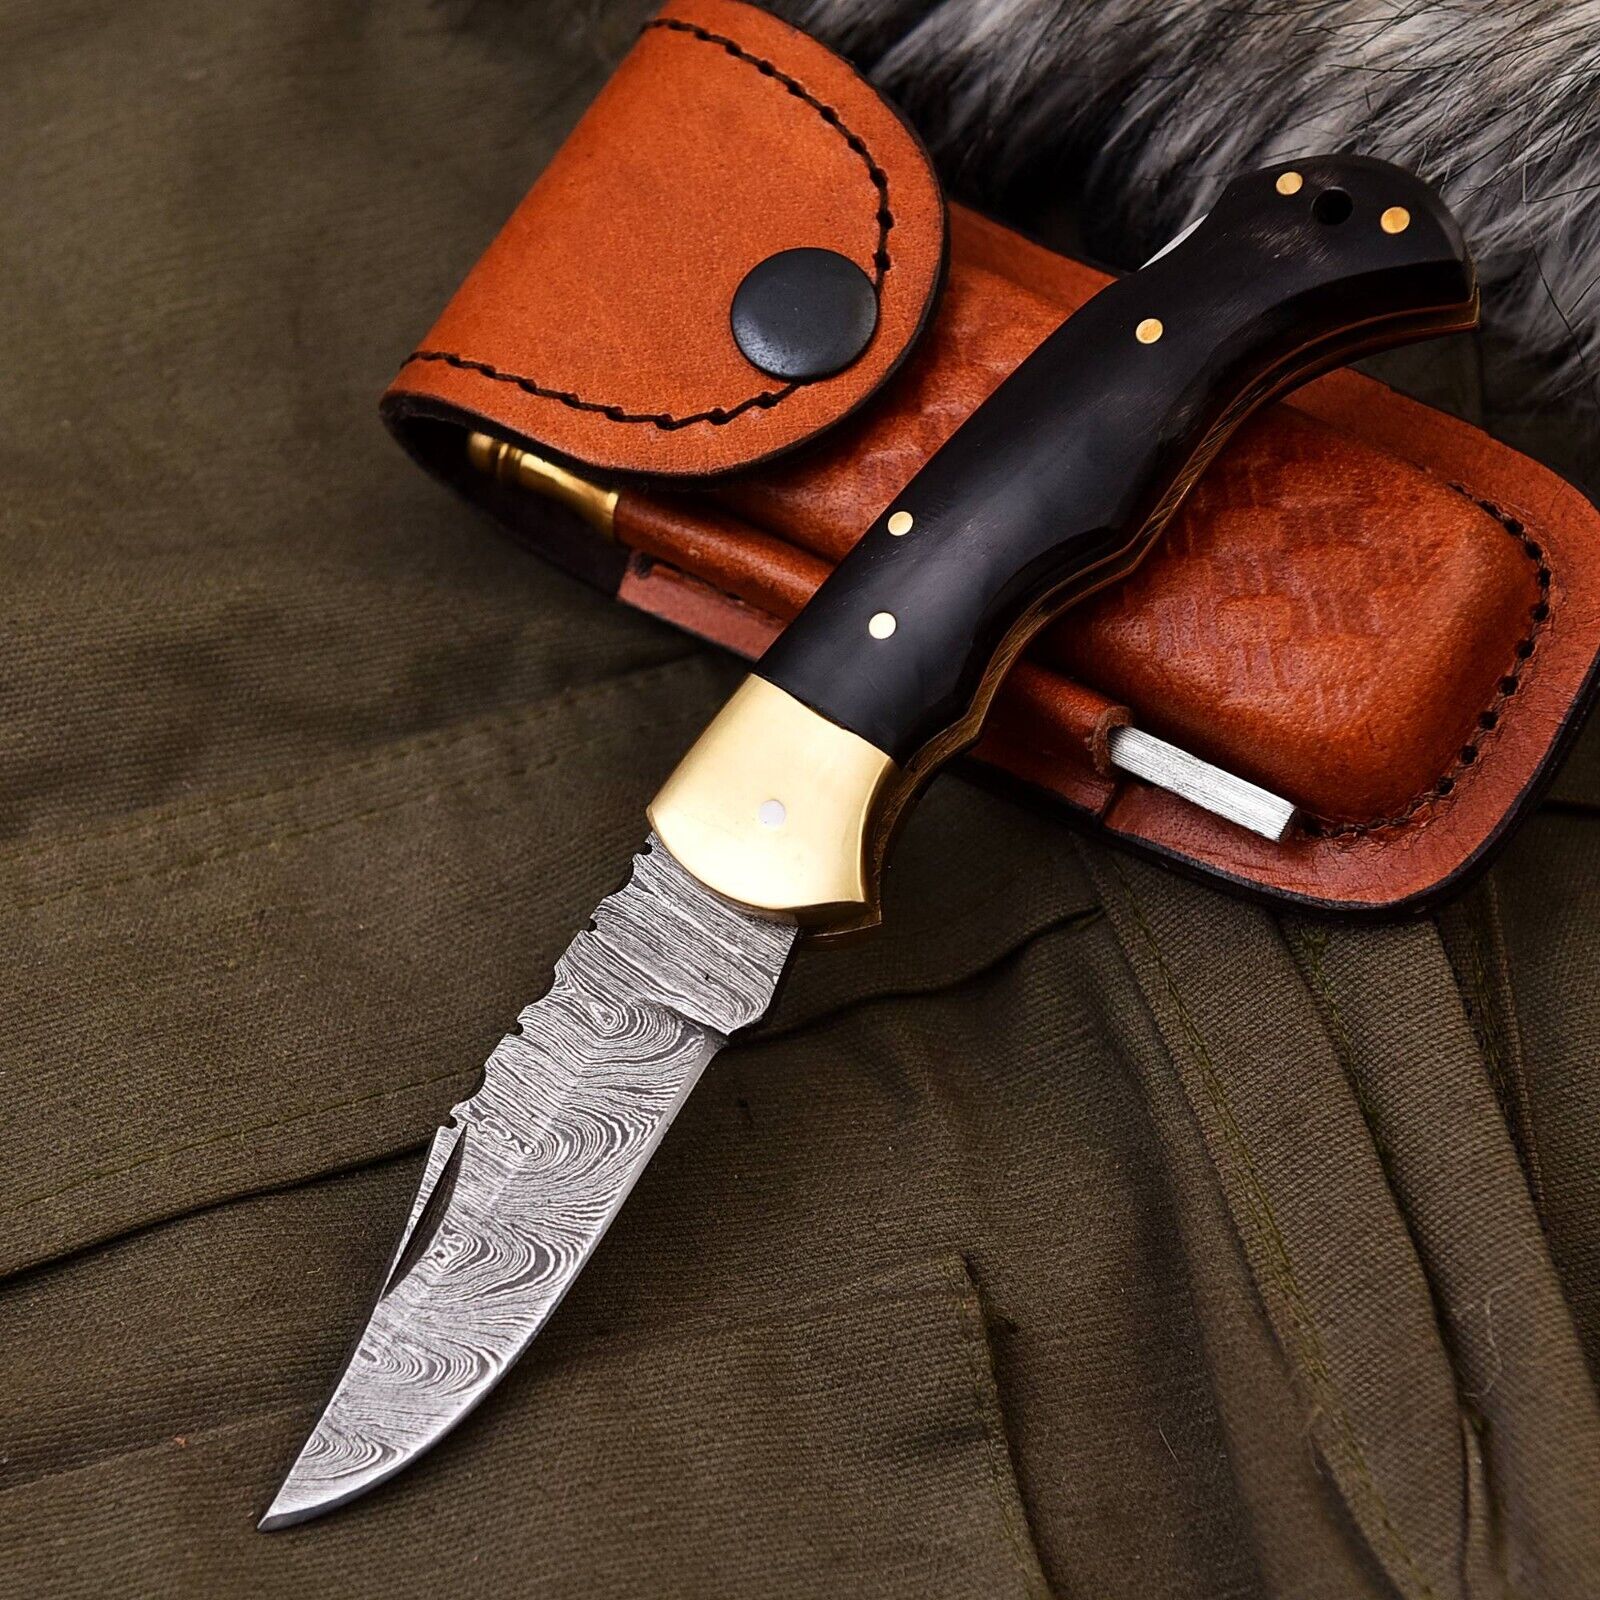 Custom Handmade Damascus Pocket Knife Folding Knife With Leather Sheath EDC